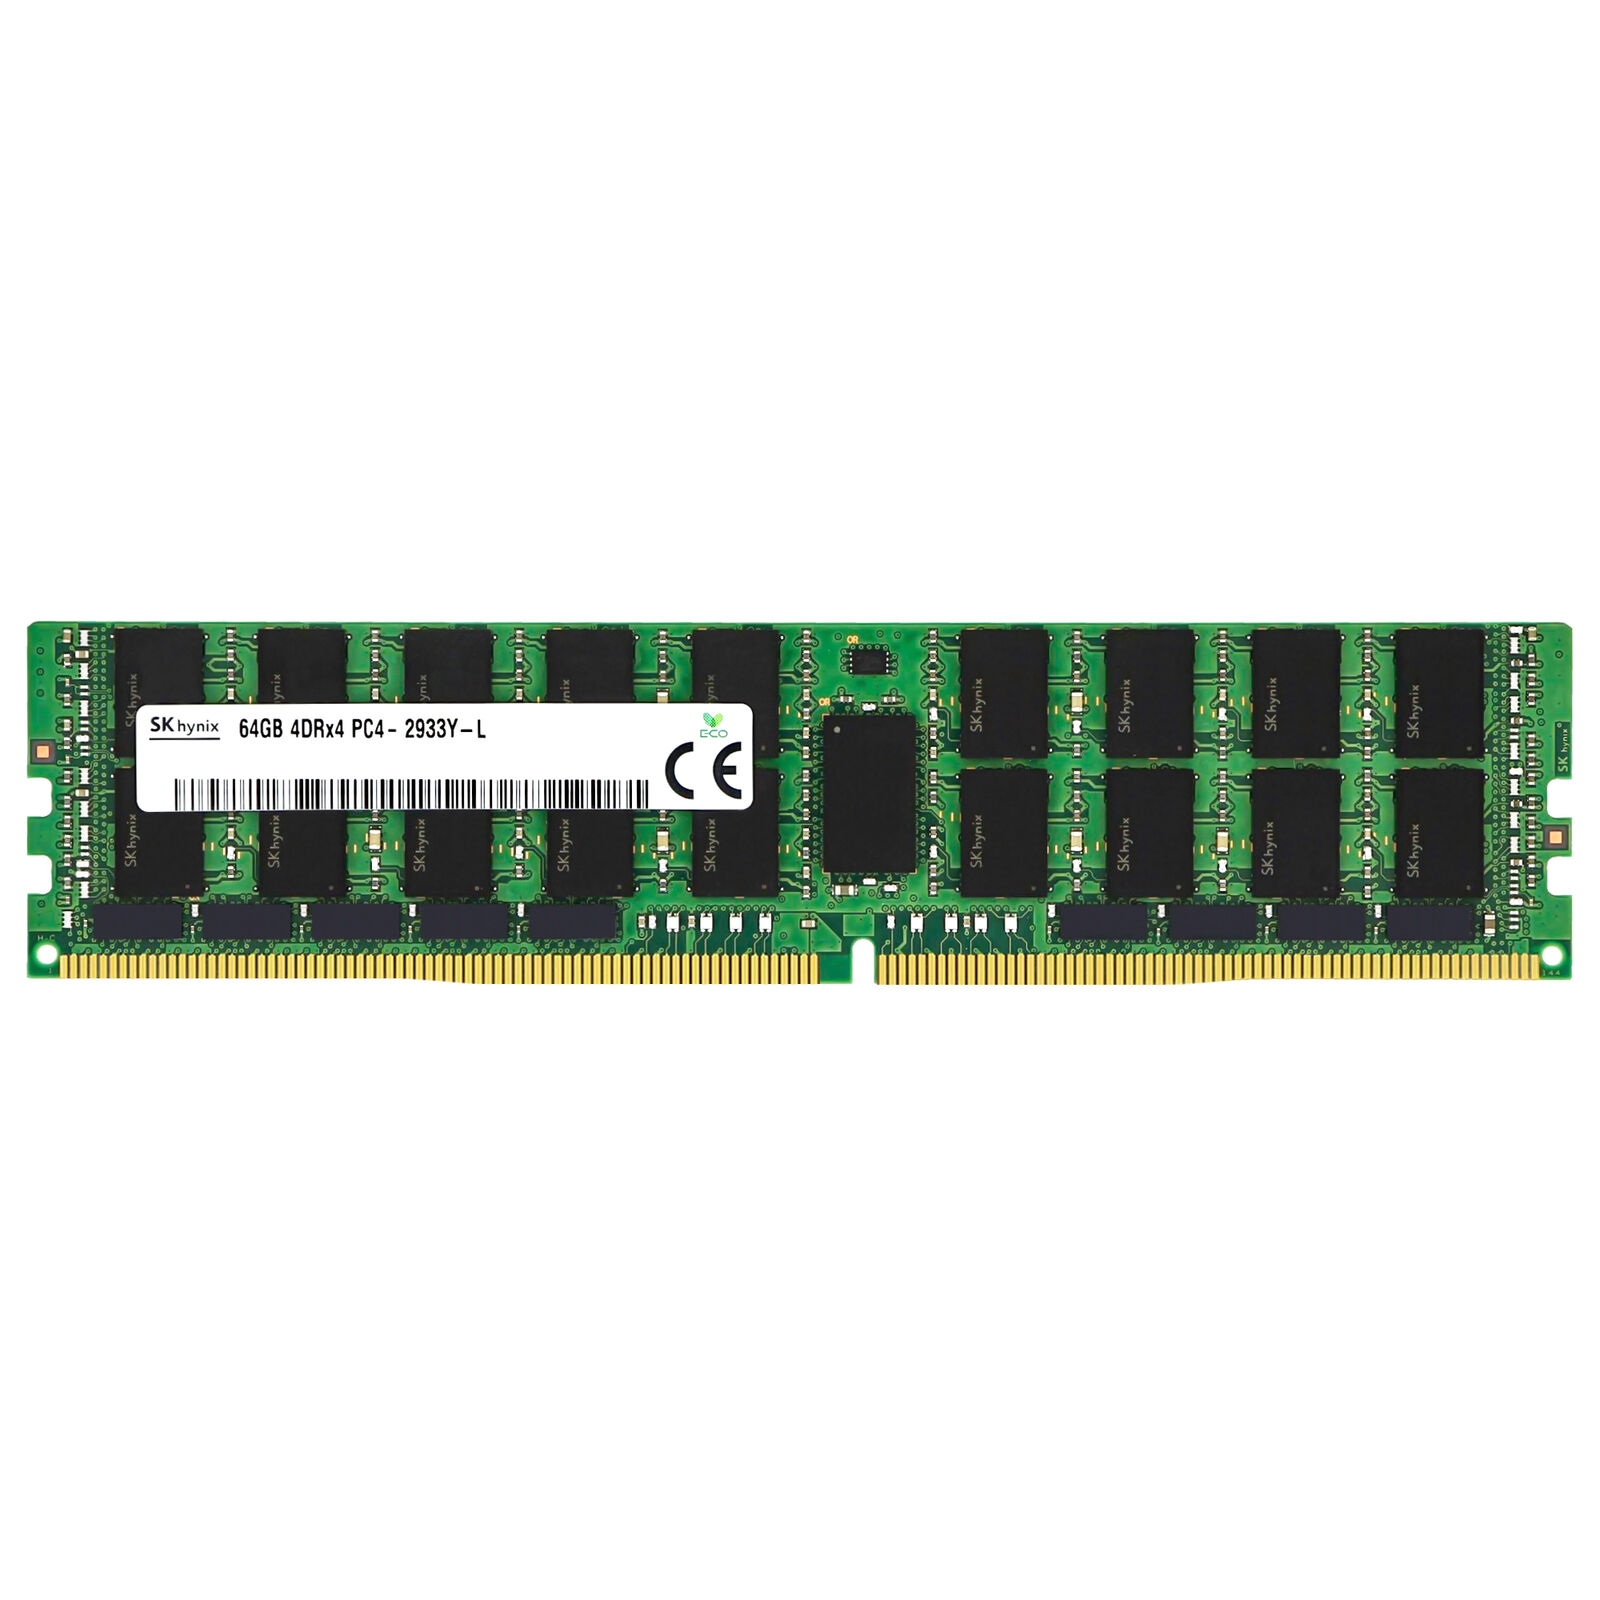 Hynix 64GB 4DRx4 PC4-2933Y LRDIMM HMAA8GR7AJR4N-WM HMAA8GL7CPR4N-WM Memory RAM